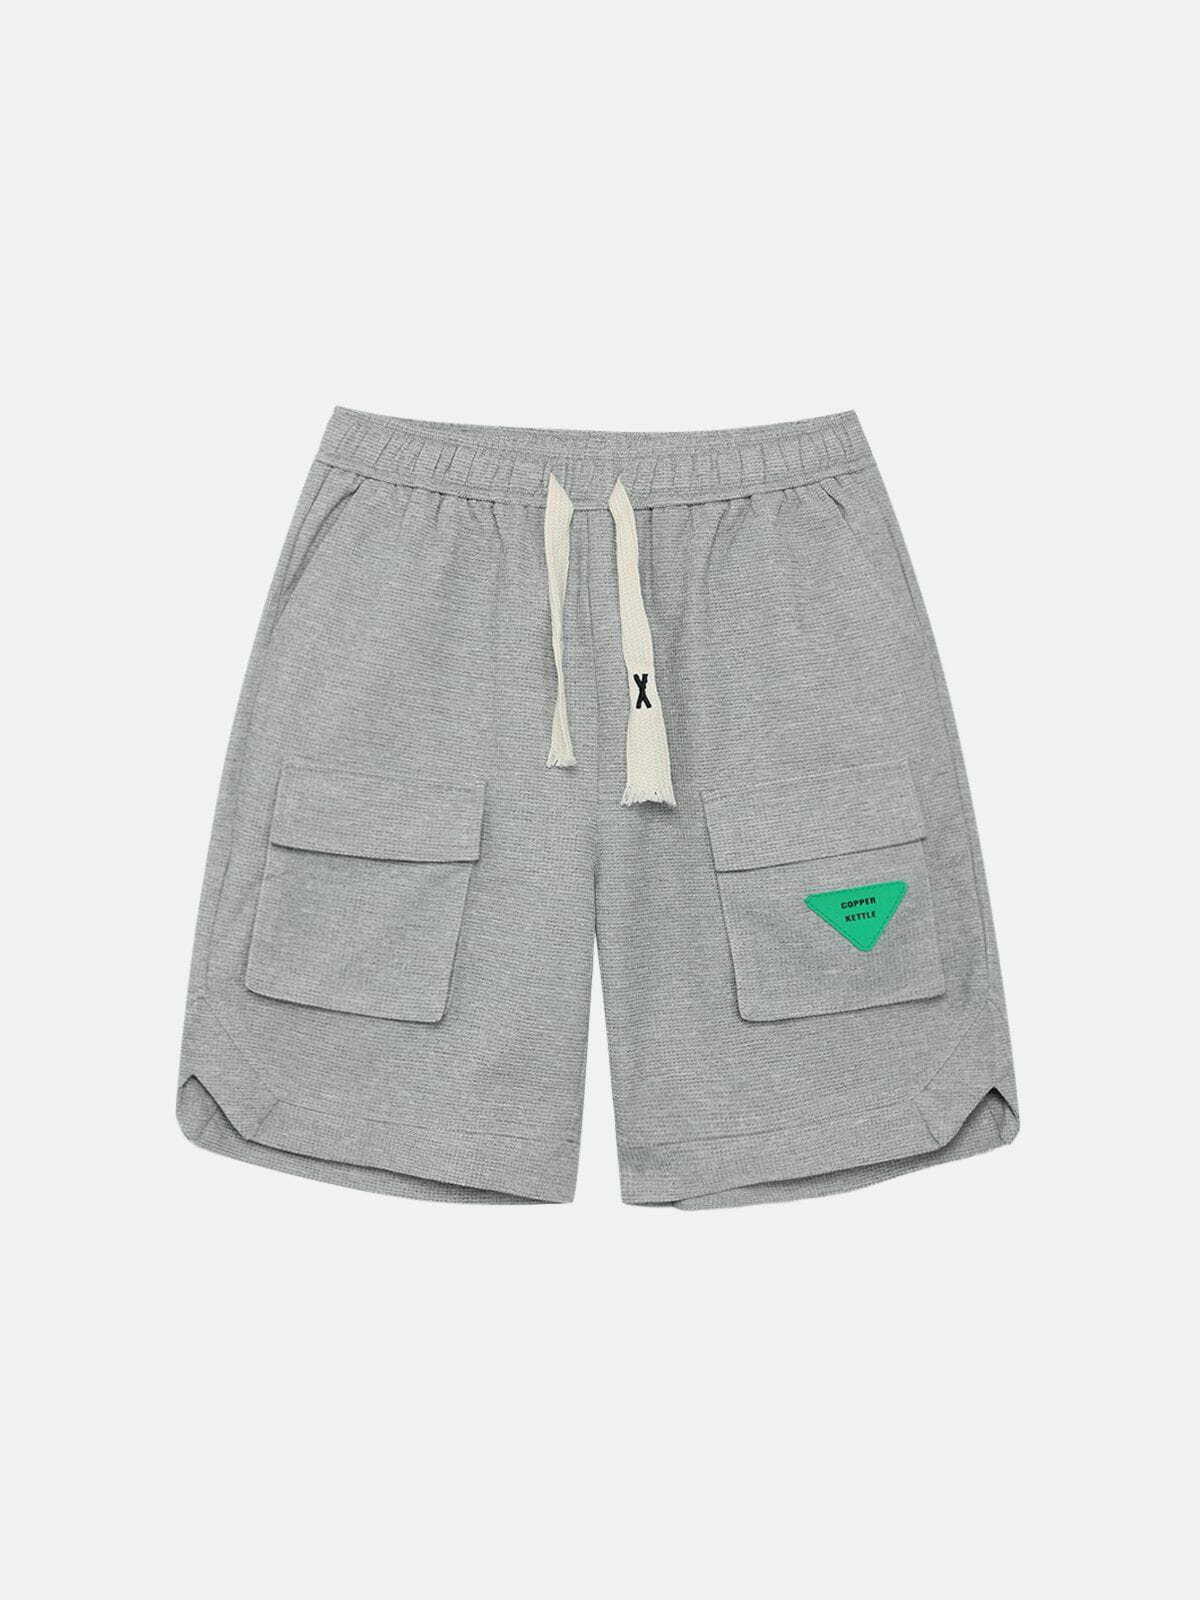 drawstring cargo shorts innovative streetwear essential 5271